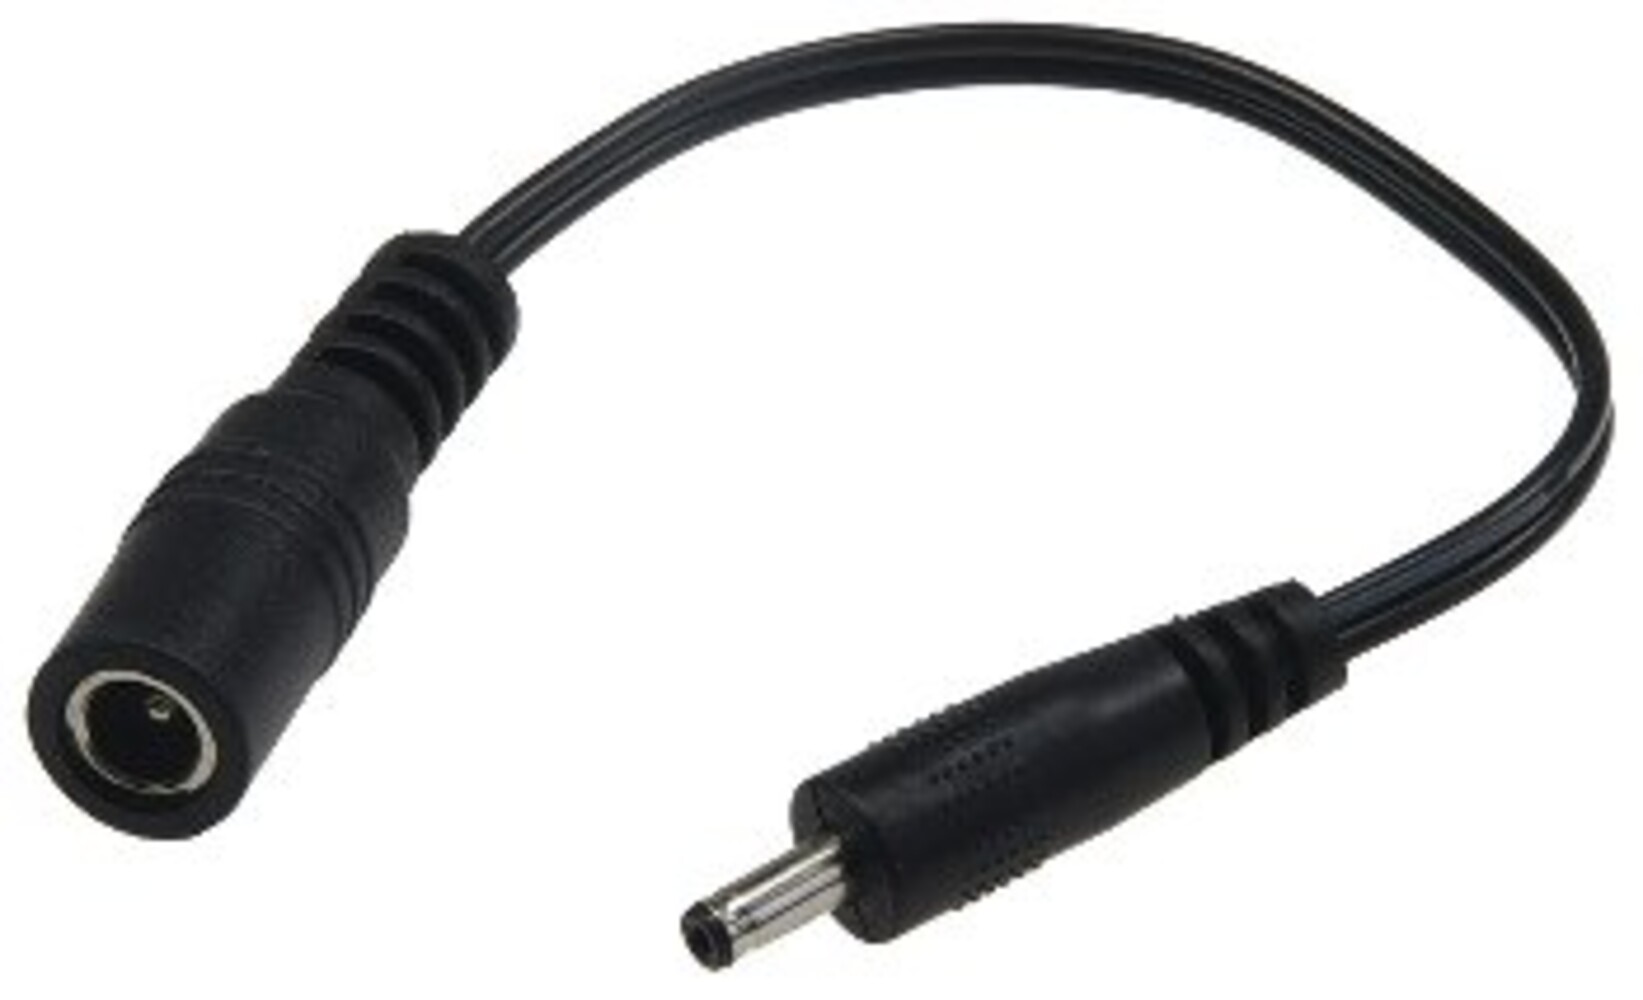 Qualitativ hochwertiger Adapter der Marke ChiliTec mit 10 cm langem Kabel